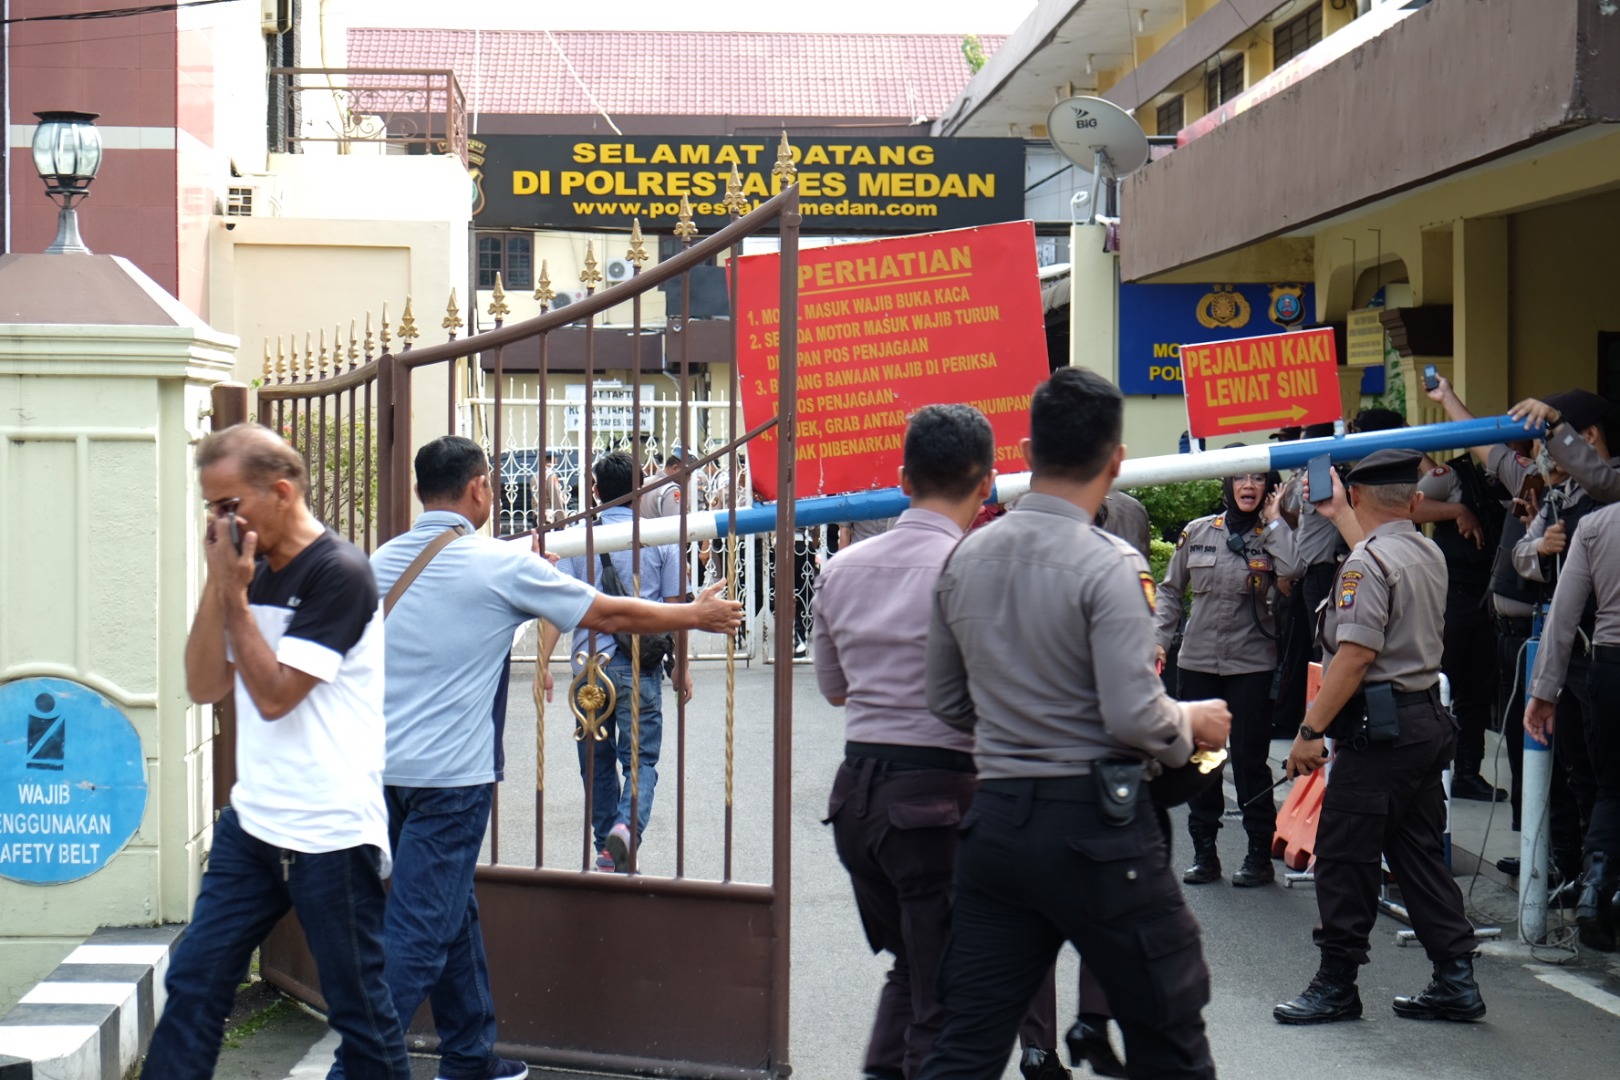 Enam orang jadi korban ledakan bom di Polrestabes Medan